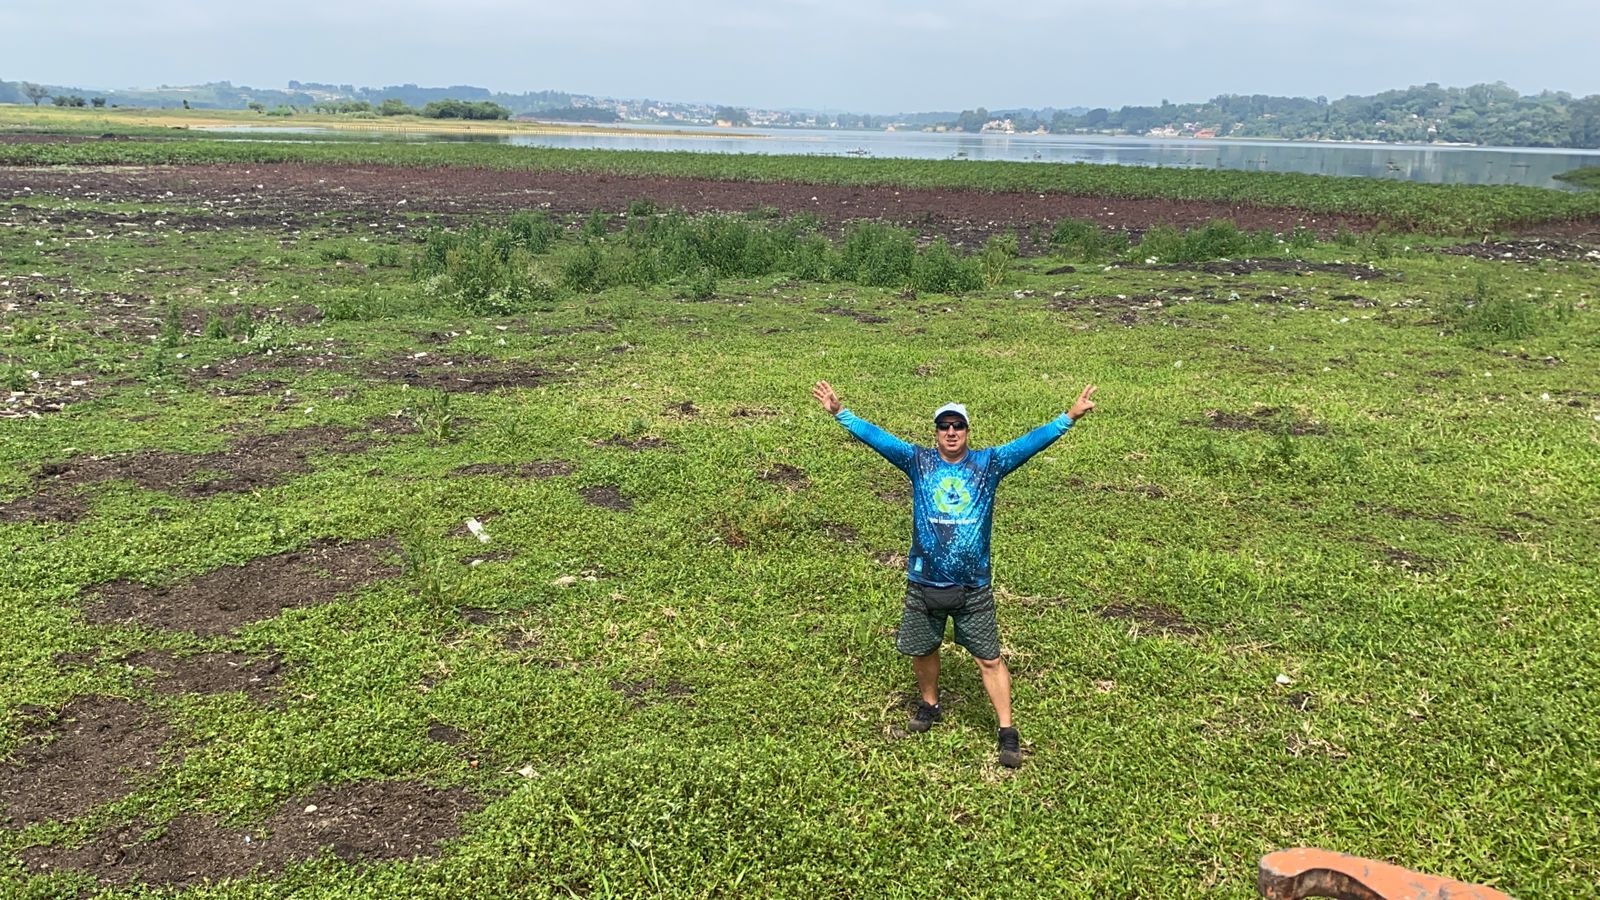 Imagem mostra homem vestido de camiseta azul abrindo os braços em meio a gramado da represa de Guarapiranga